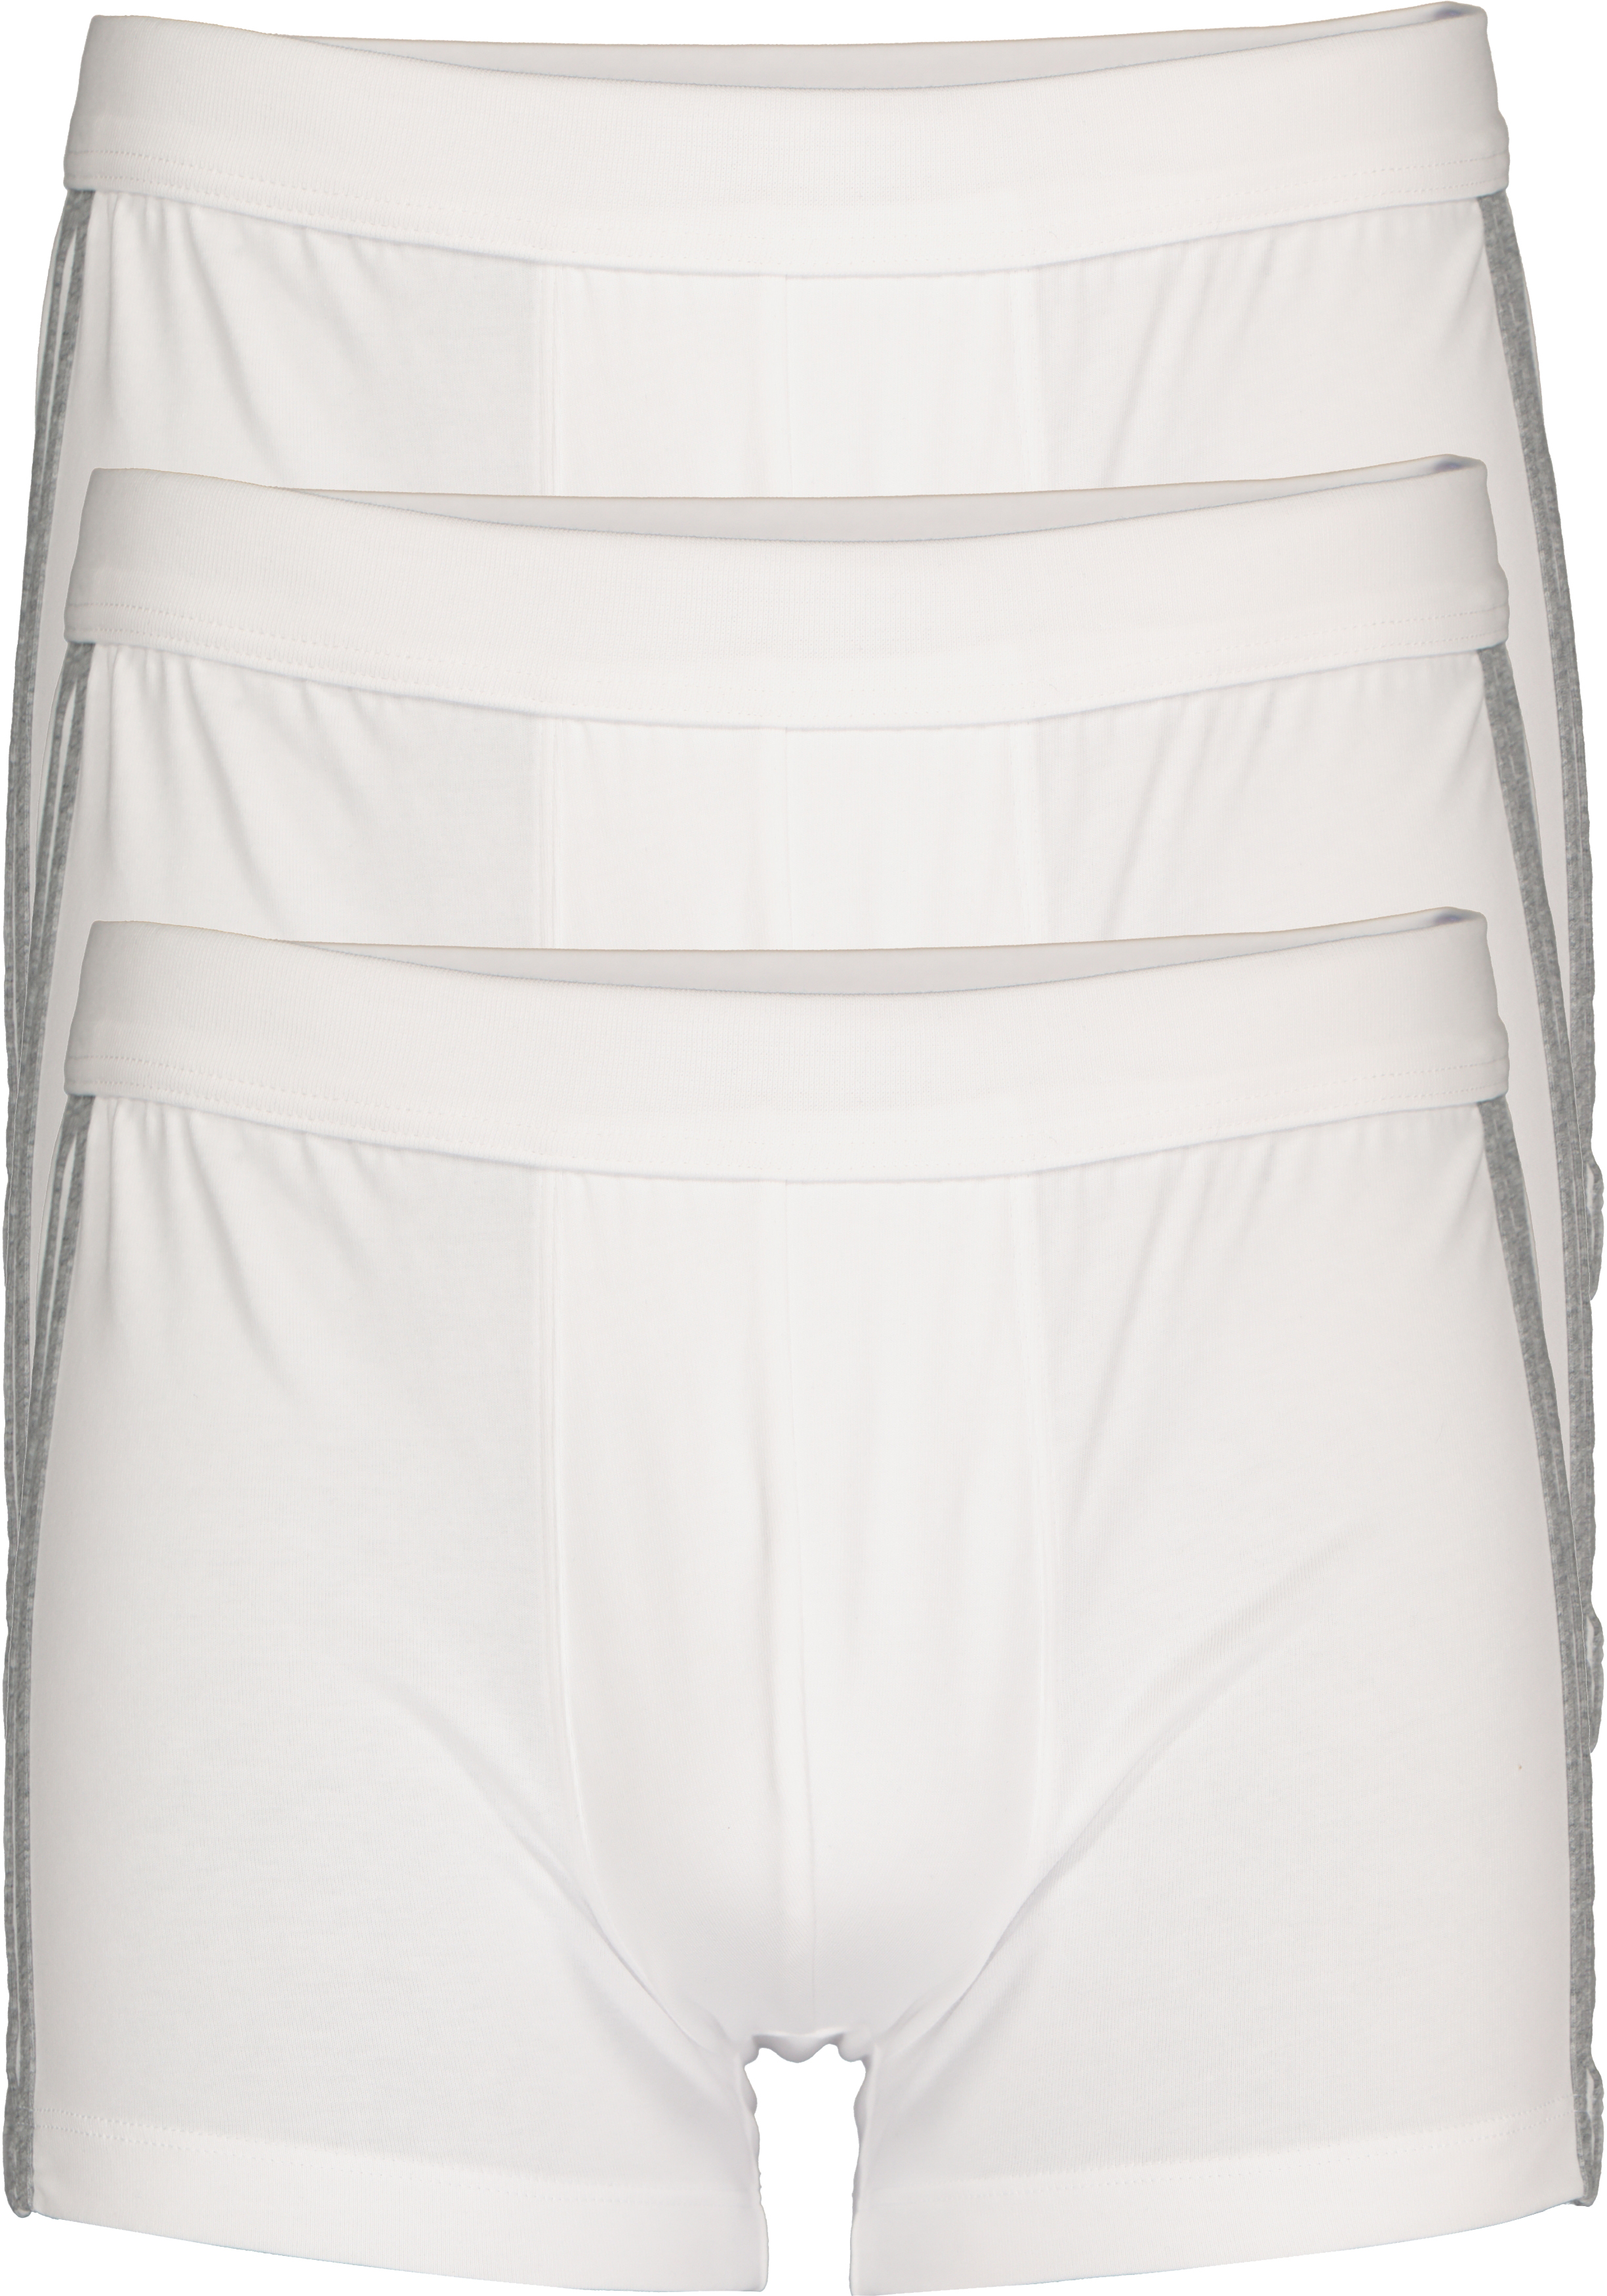 SCHIESSER 95/5 Stretch shorts (3-pack), wit